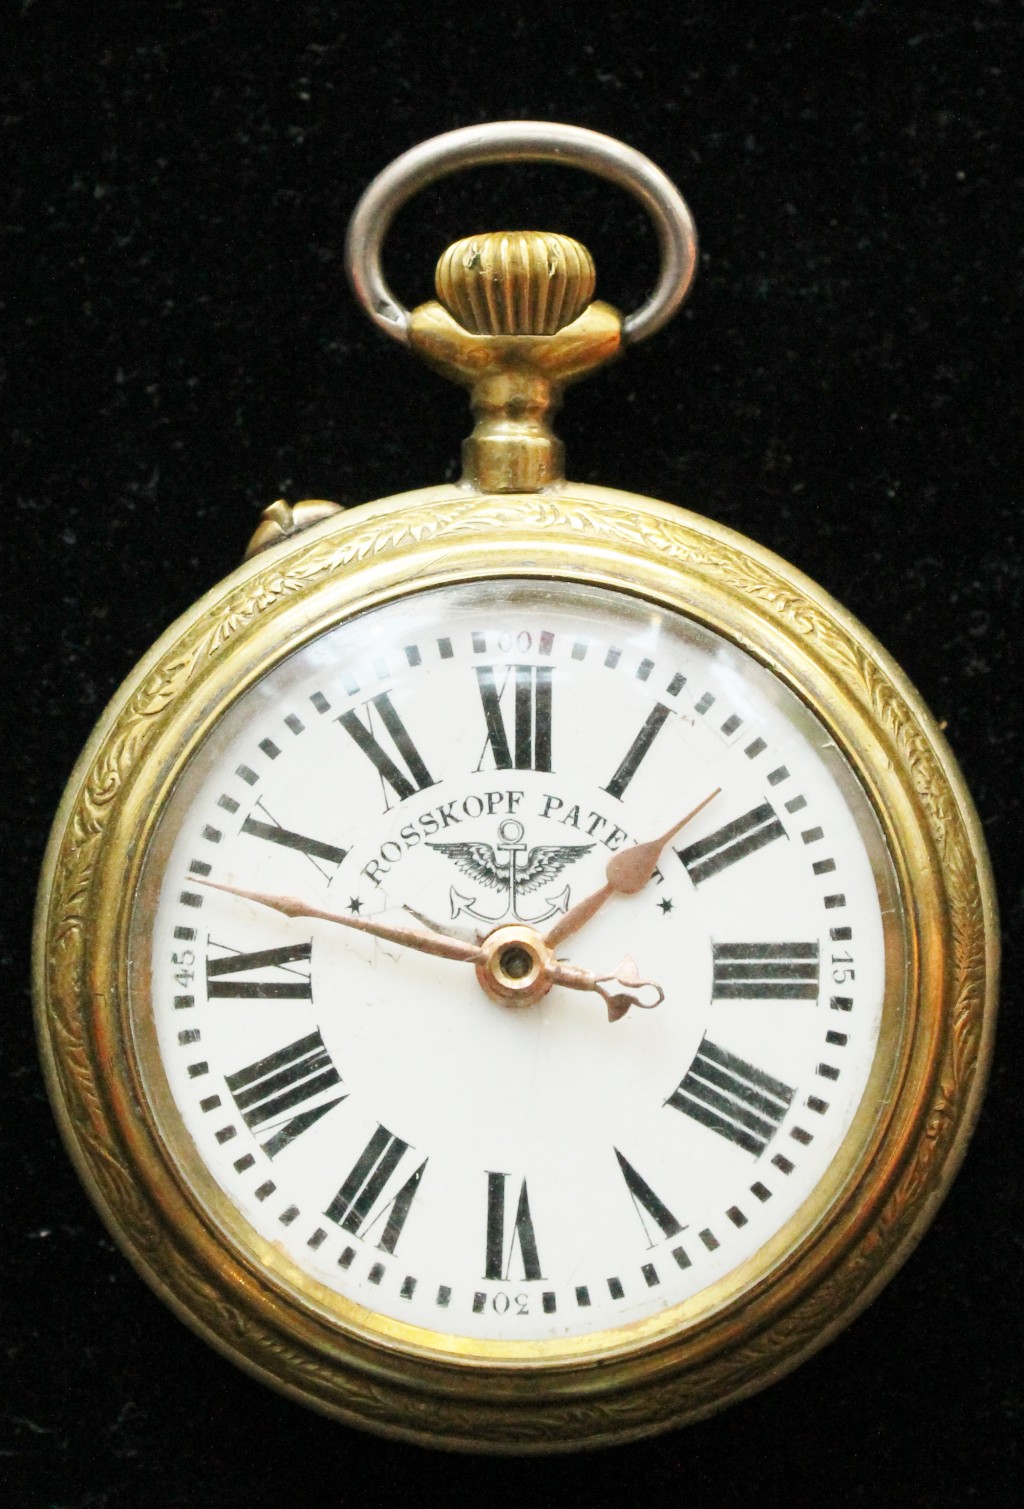 Kapesní hodinky Roskopf